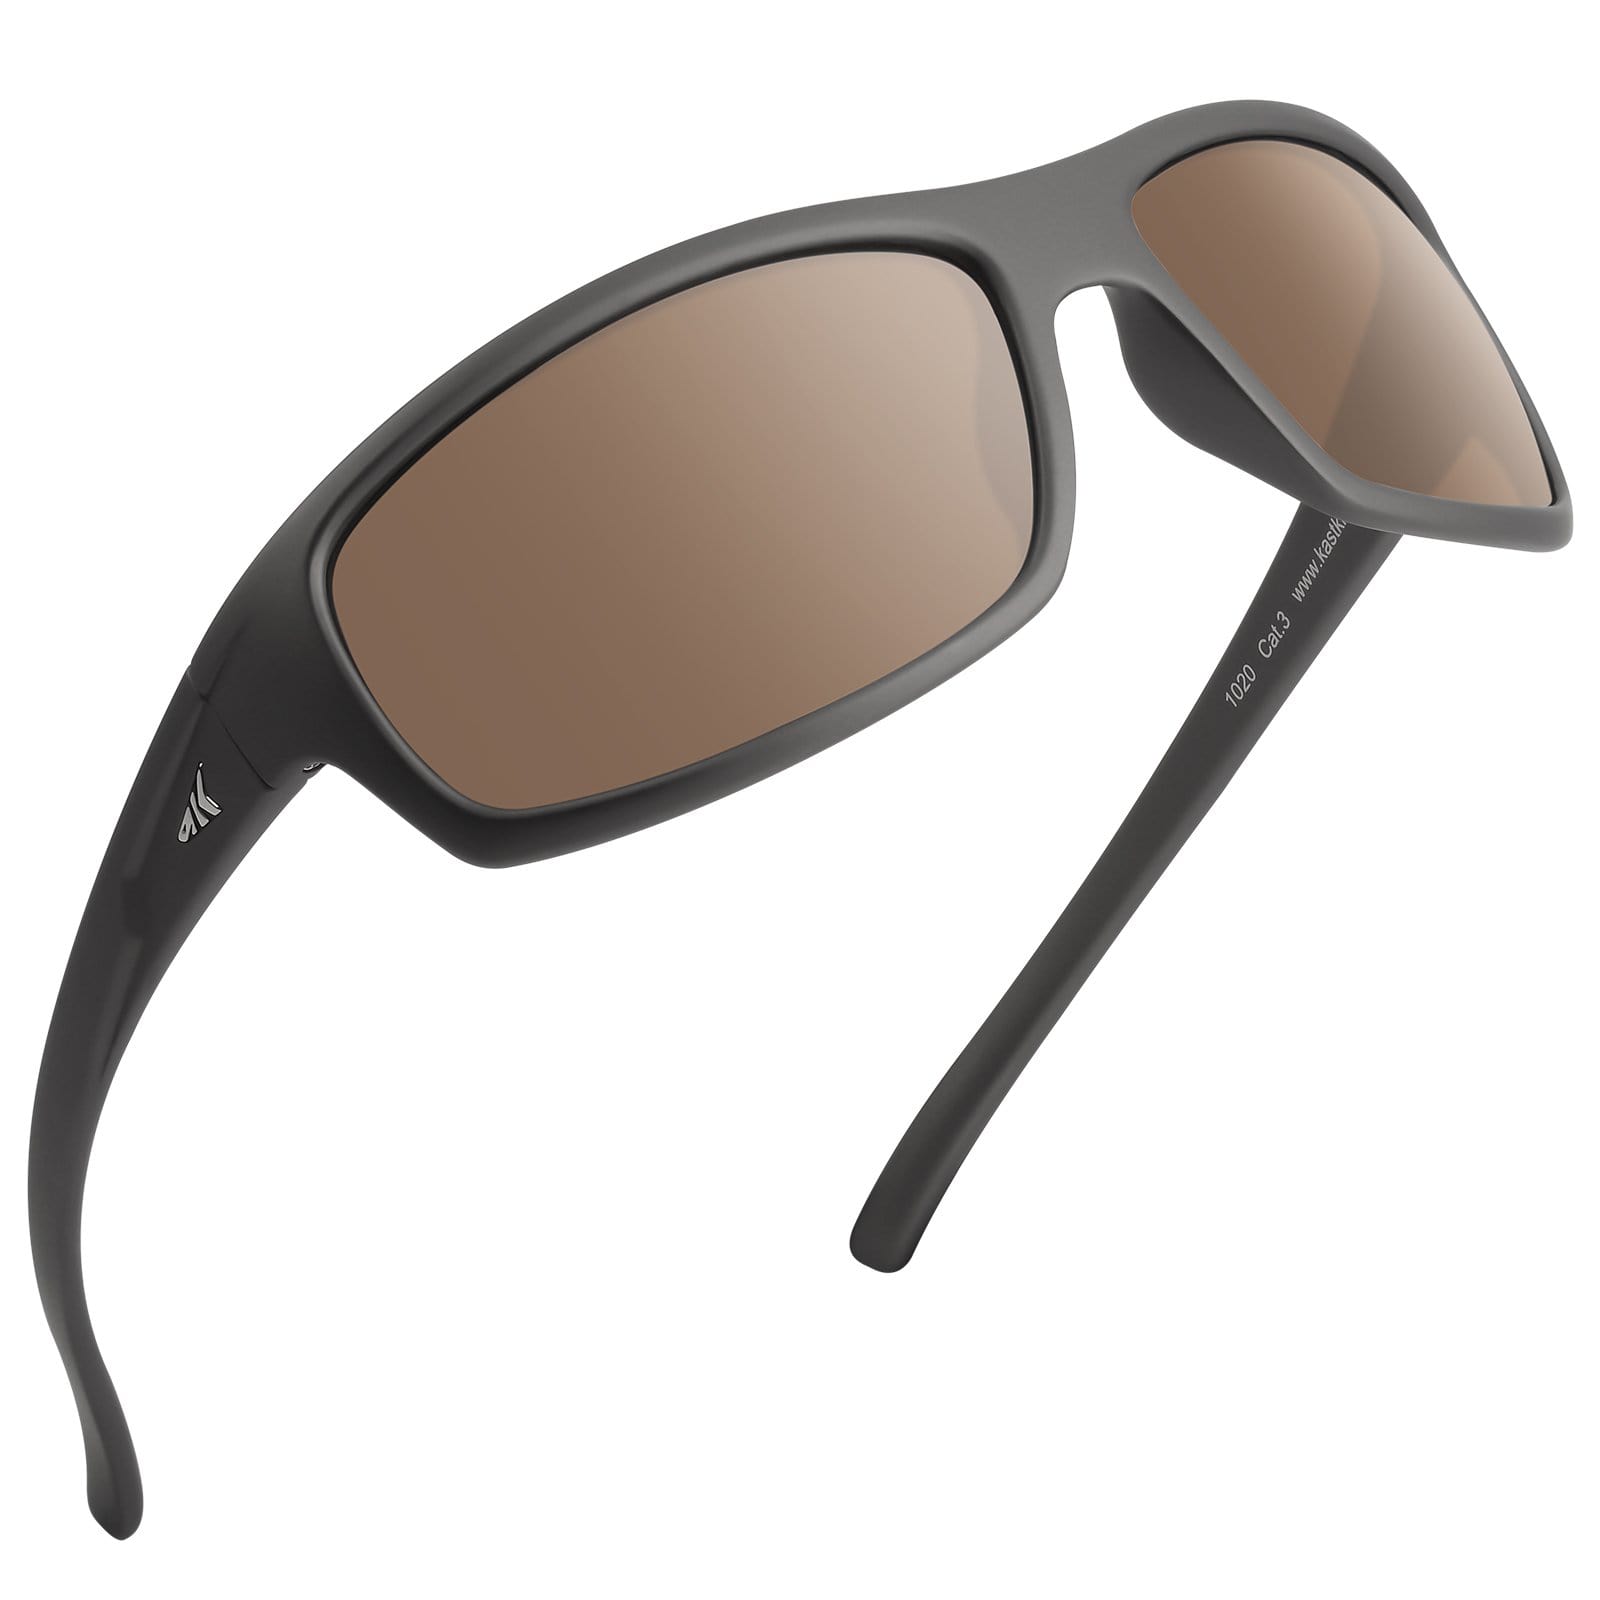 Buy KastKing Cuivre Sport Sunglasses for Men and Women Online at  desertcartINDIA